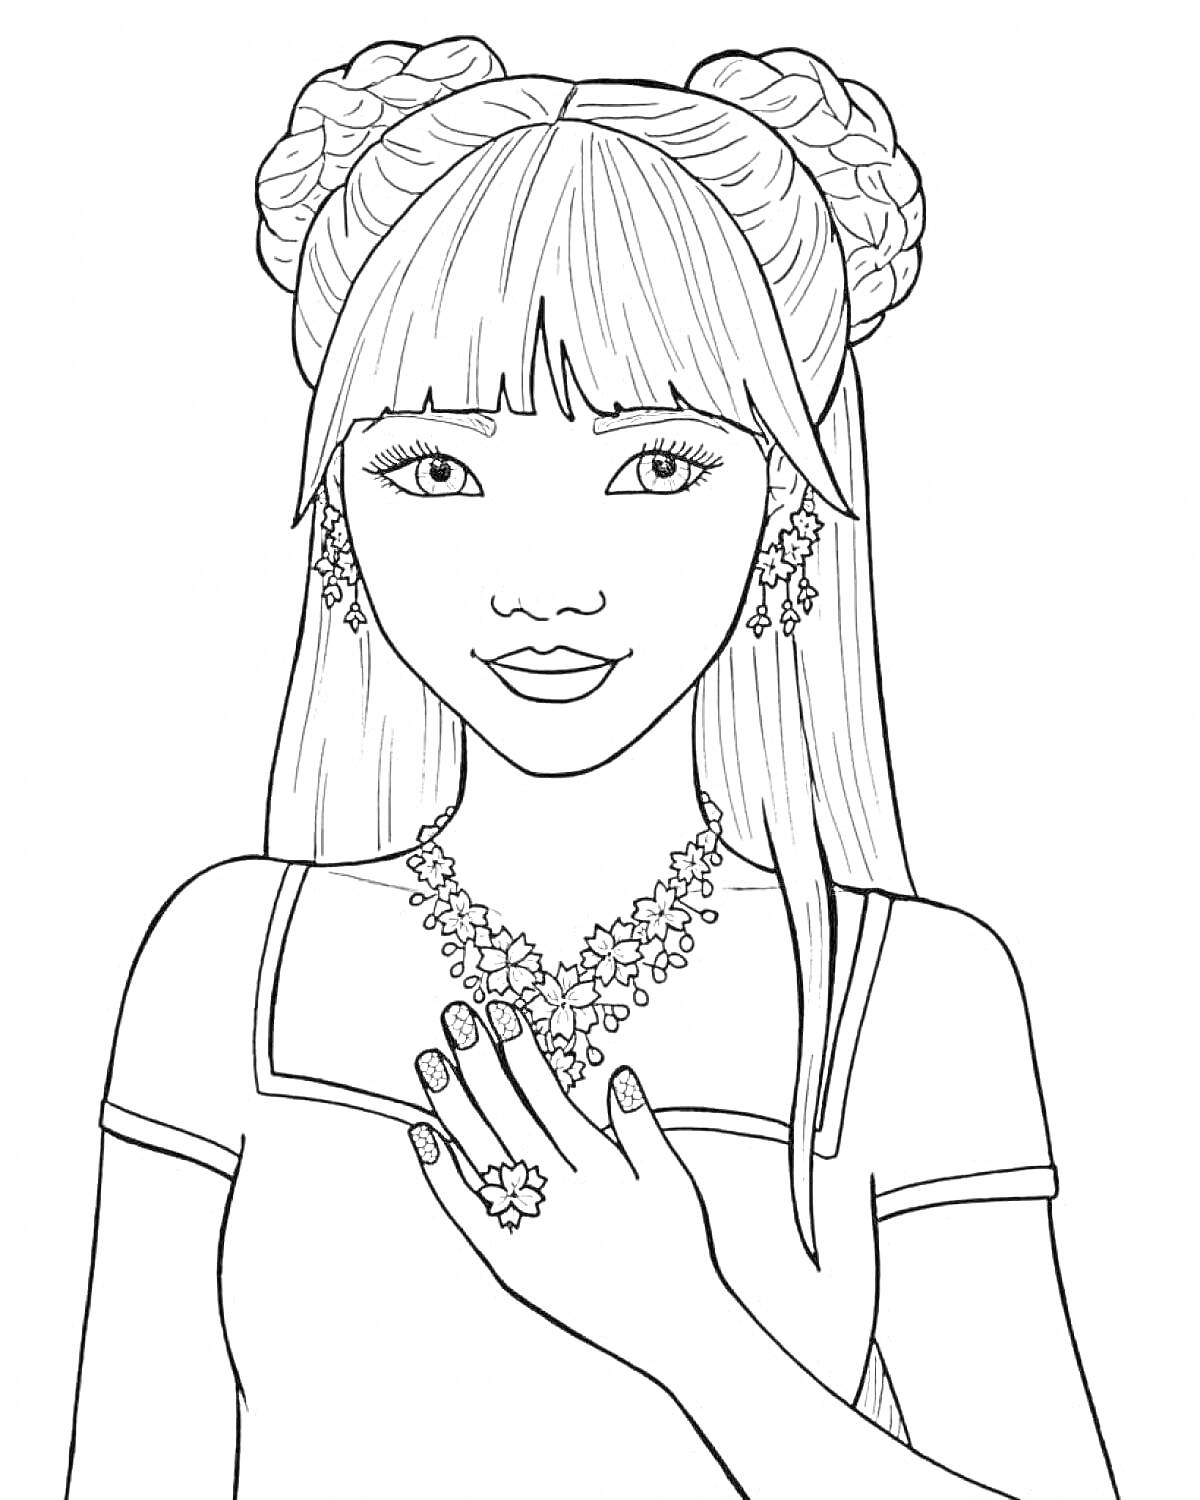 Раскраска Девушка с высокими прическами, ожерельем и кольцами